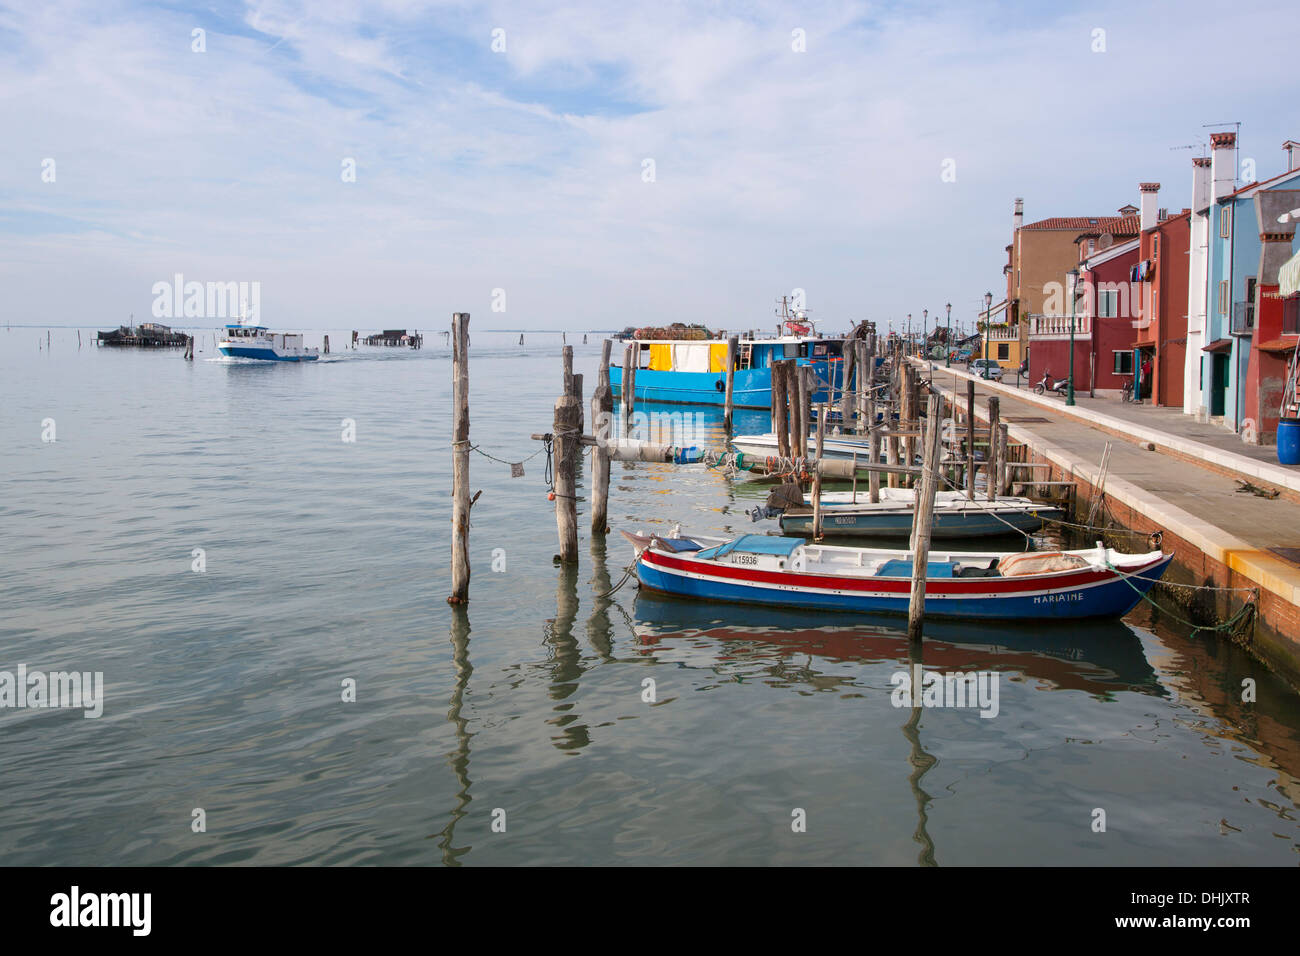 Fishing boats alongside promenade, Pellestrina, Veneto, Italy, Europe Stock Photo